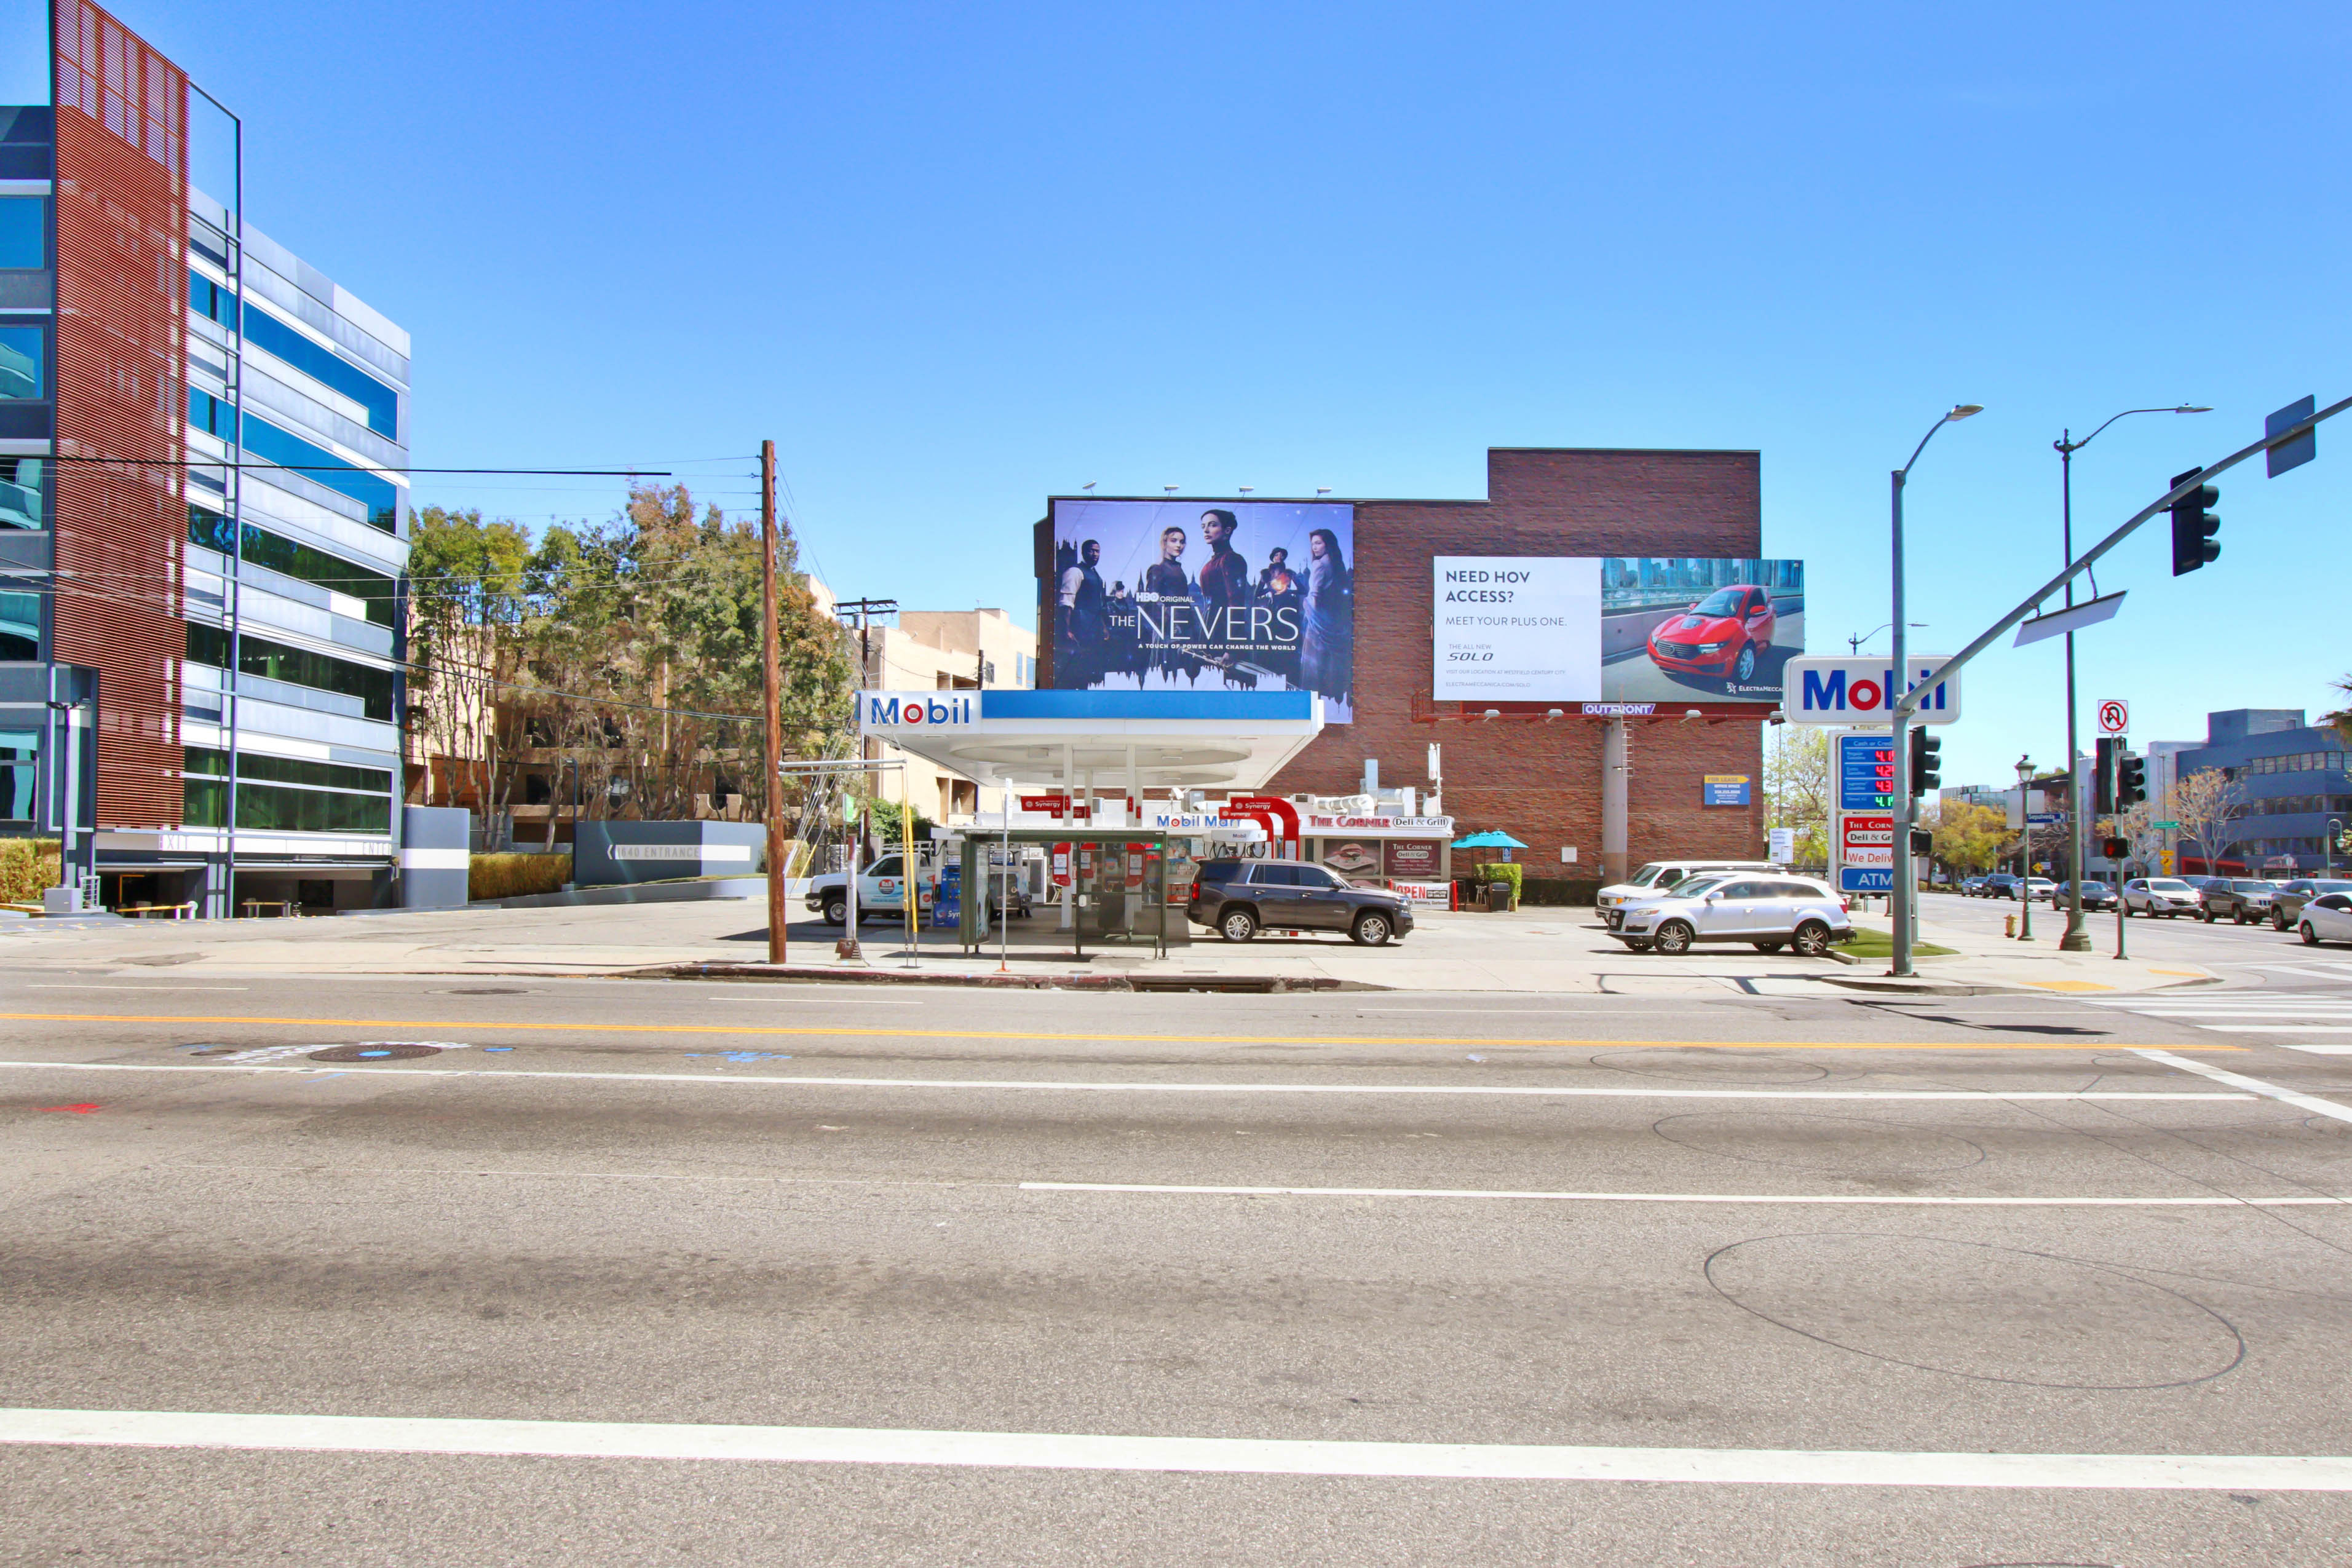 For Sale – Landmark West L.A. Gas Station – Corner Mobil